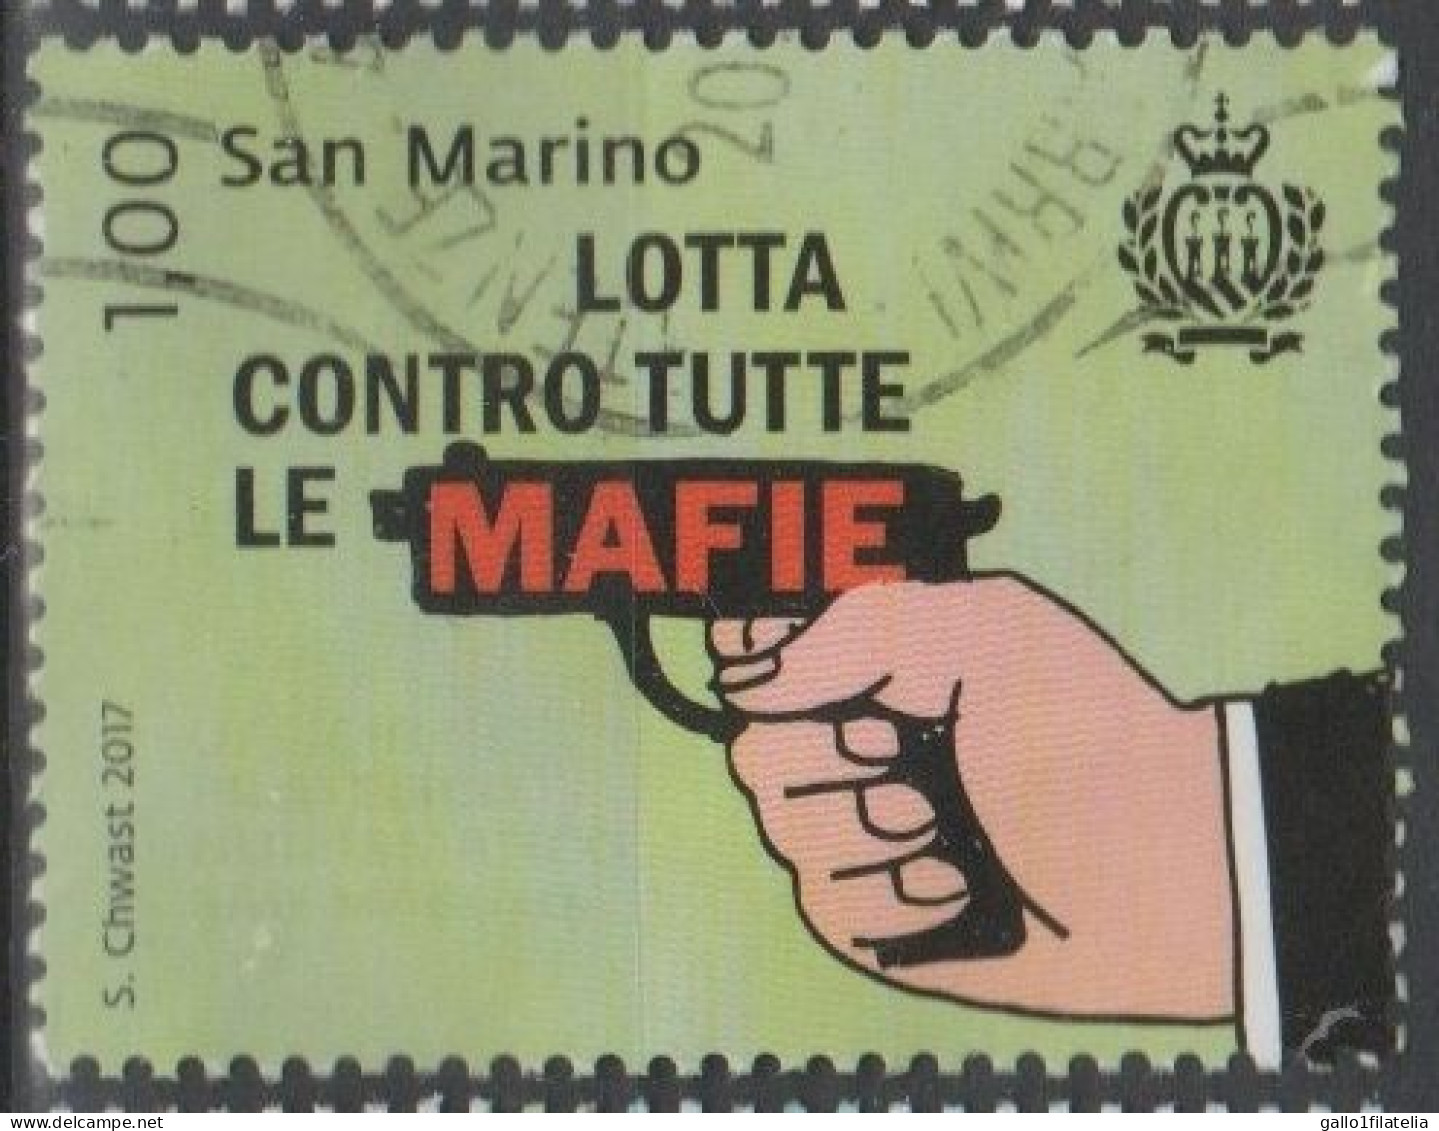 2017 - SAN MARINO - LOTTA CONTRO TUTTE LE MAFIE / FIGHT AGAINST ALL MAFIAS - USATO - Used Stamps